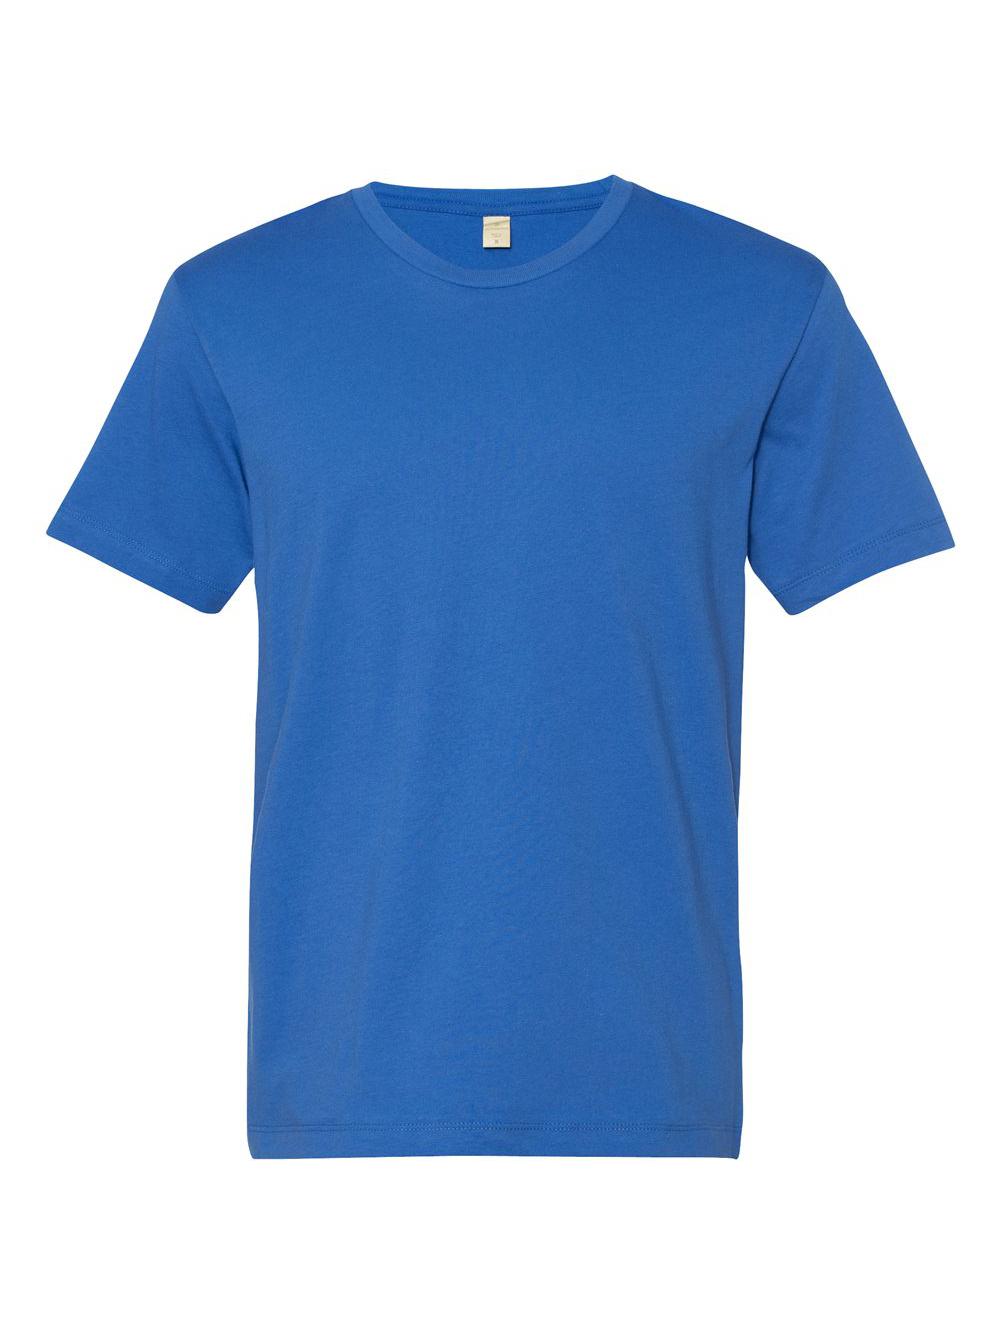 Unisex Go-To T-Shirt - image 2 of 3